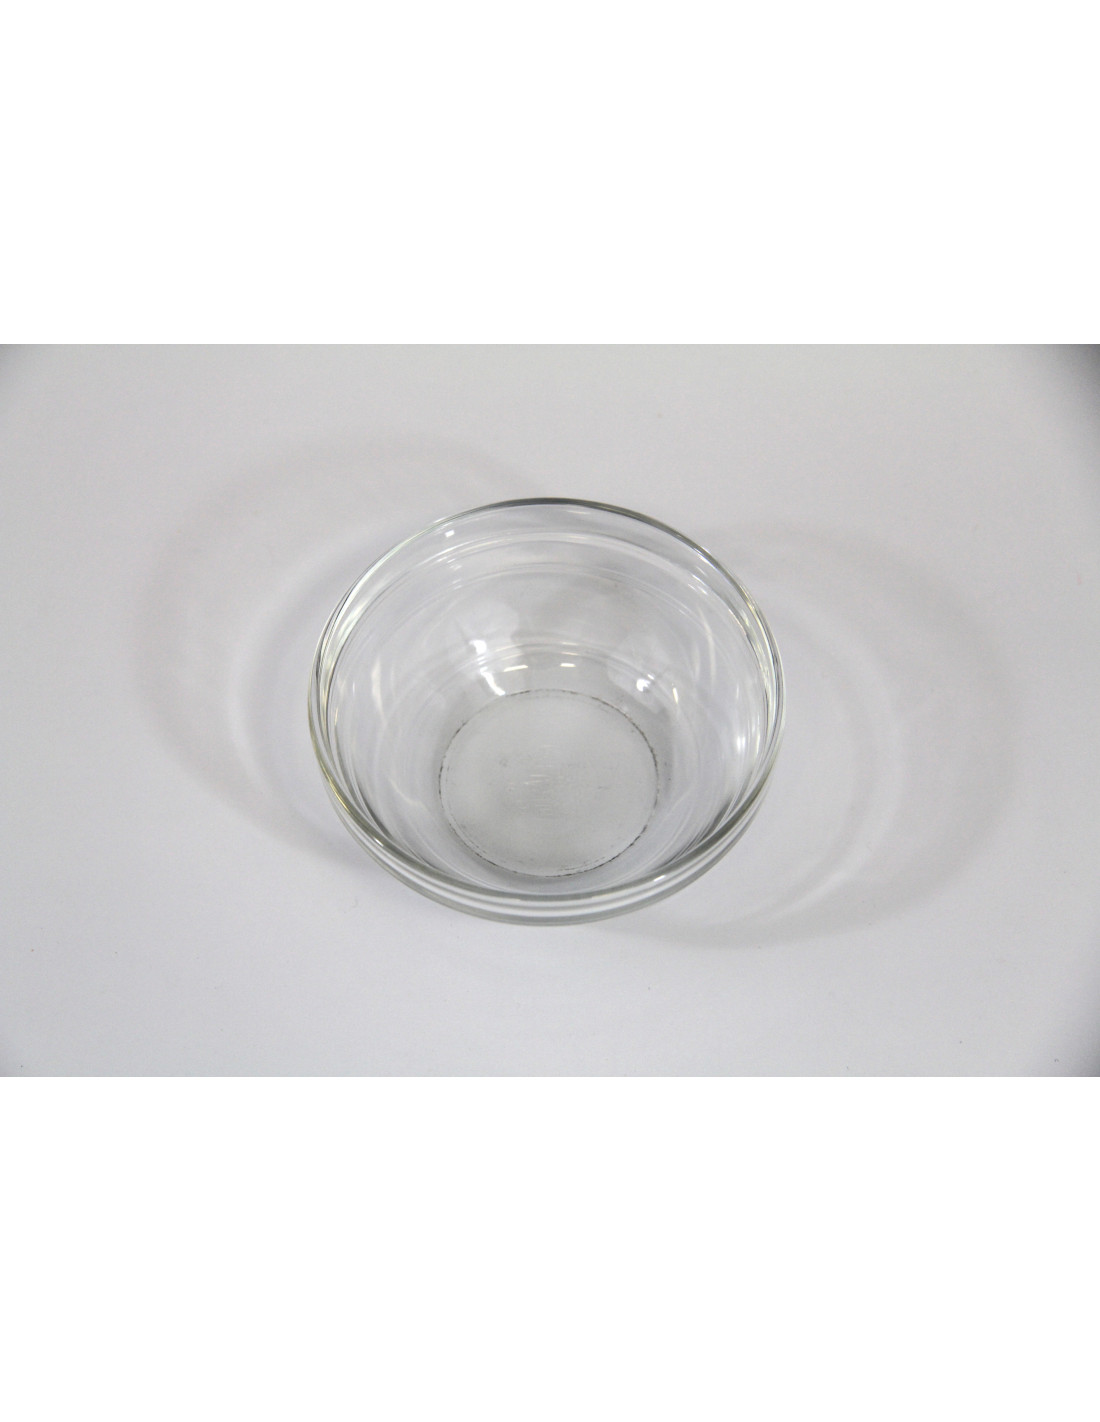 Soglass propose la découpe de verre sur mesure comme Verre trempé rond